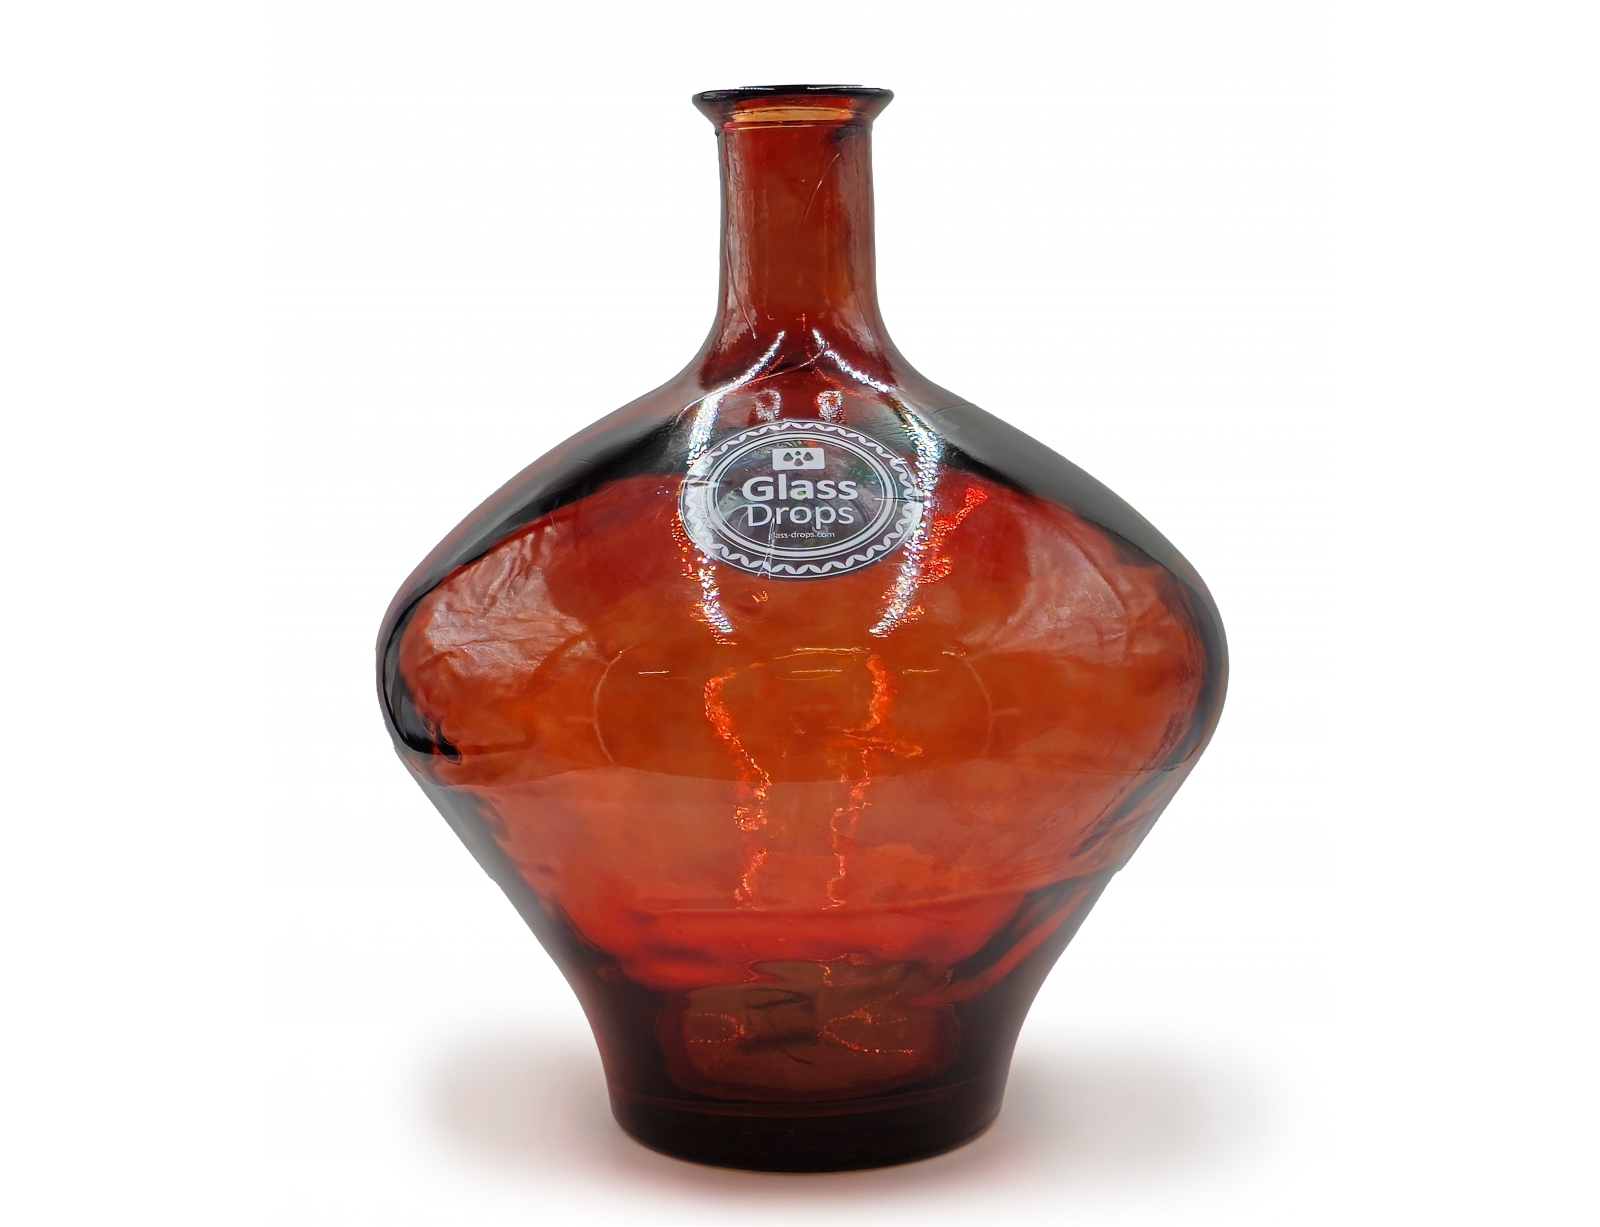 Εικόνα Διακοσμητικό Βάζο Glass Drops Cherry Cream Meguino (4638DB738) Από ανακυκλωμένο γυαλί, Χωρητικότητας 20.5L, Διαστάσεων Ø 37 x Υ 46cm, Terracota